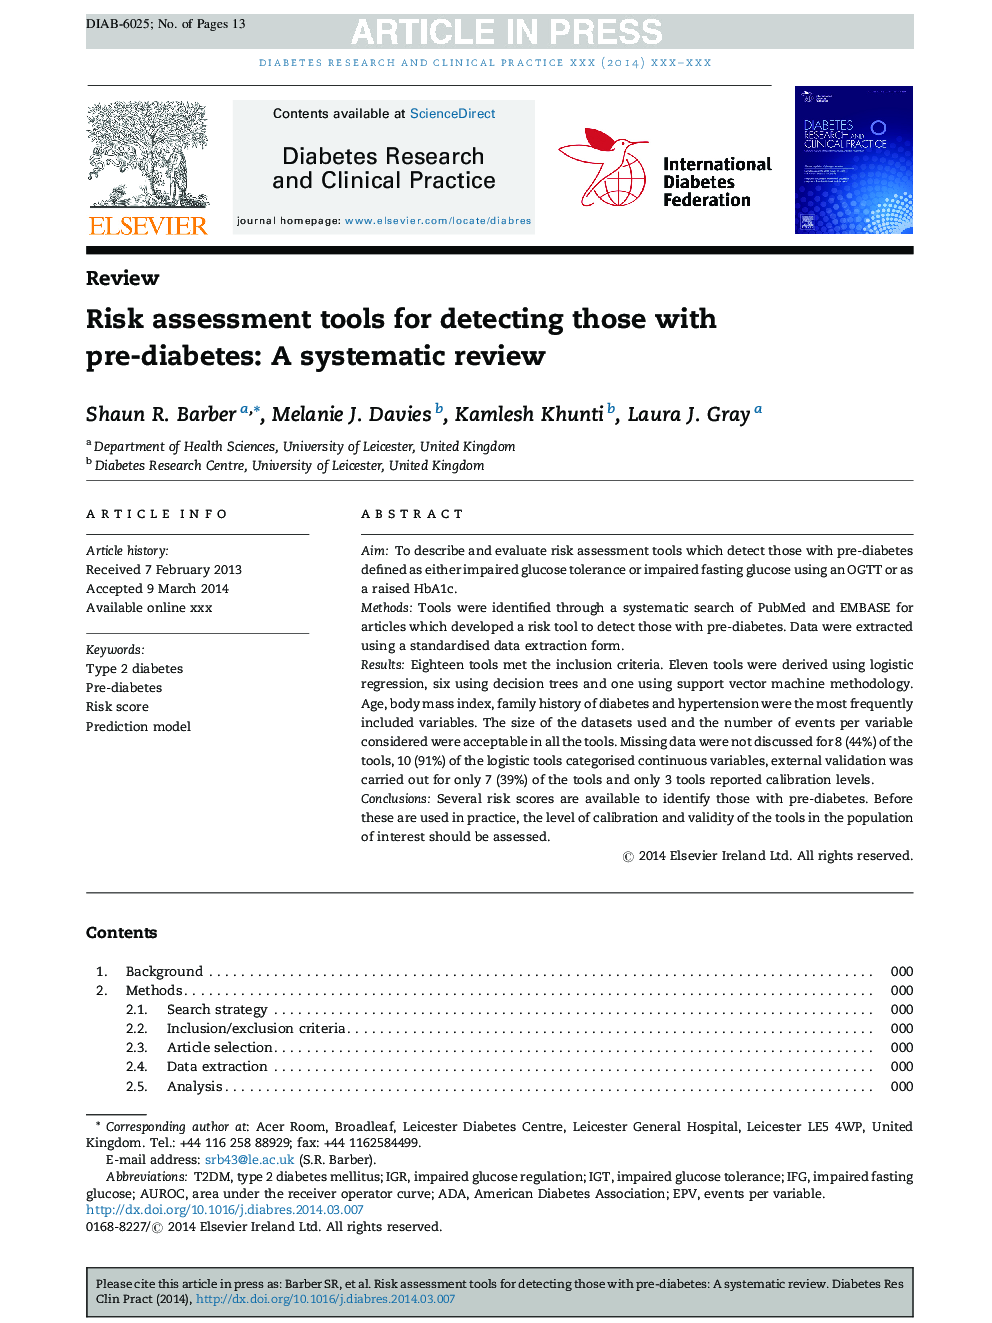 ابزارهای ارزیابی ریسک برای تشخیص افراد مبتلا به دیابت قبل از دیابت: یک بررسی سیستماتیک 